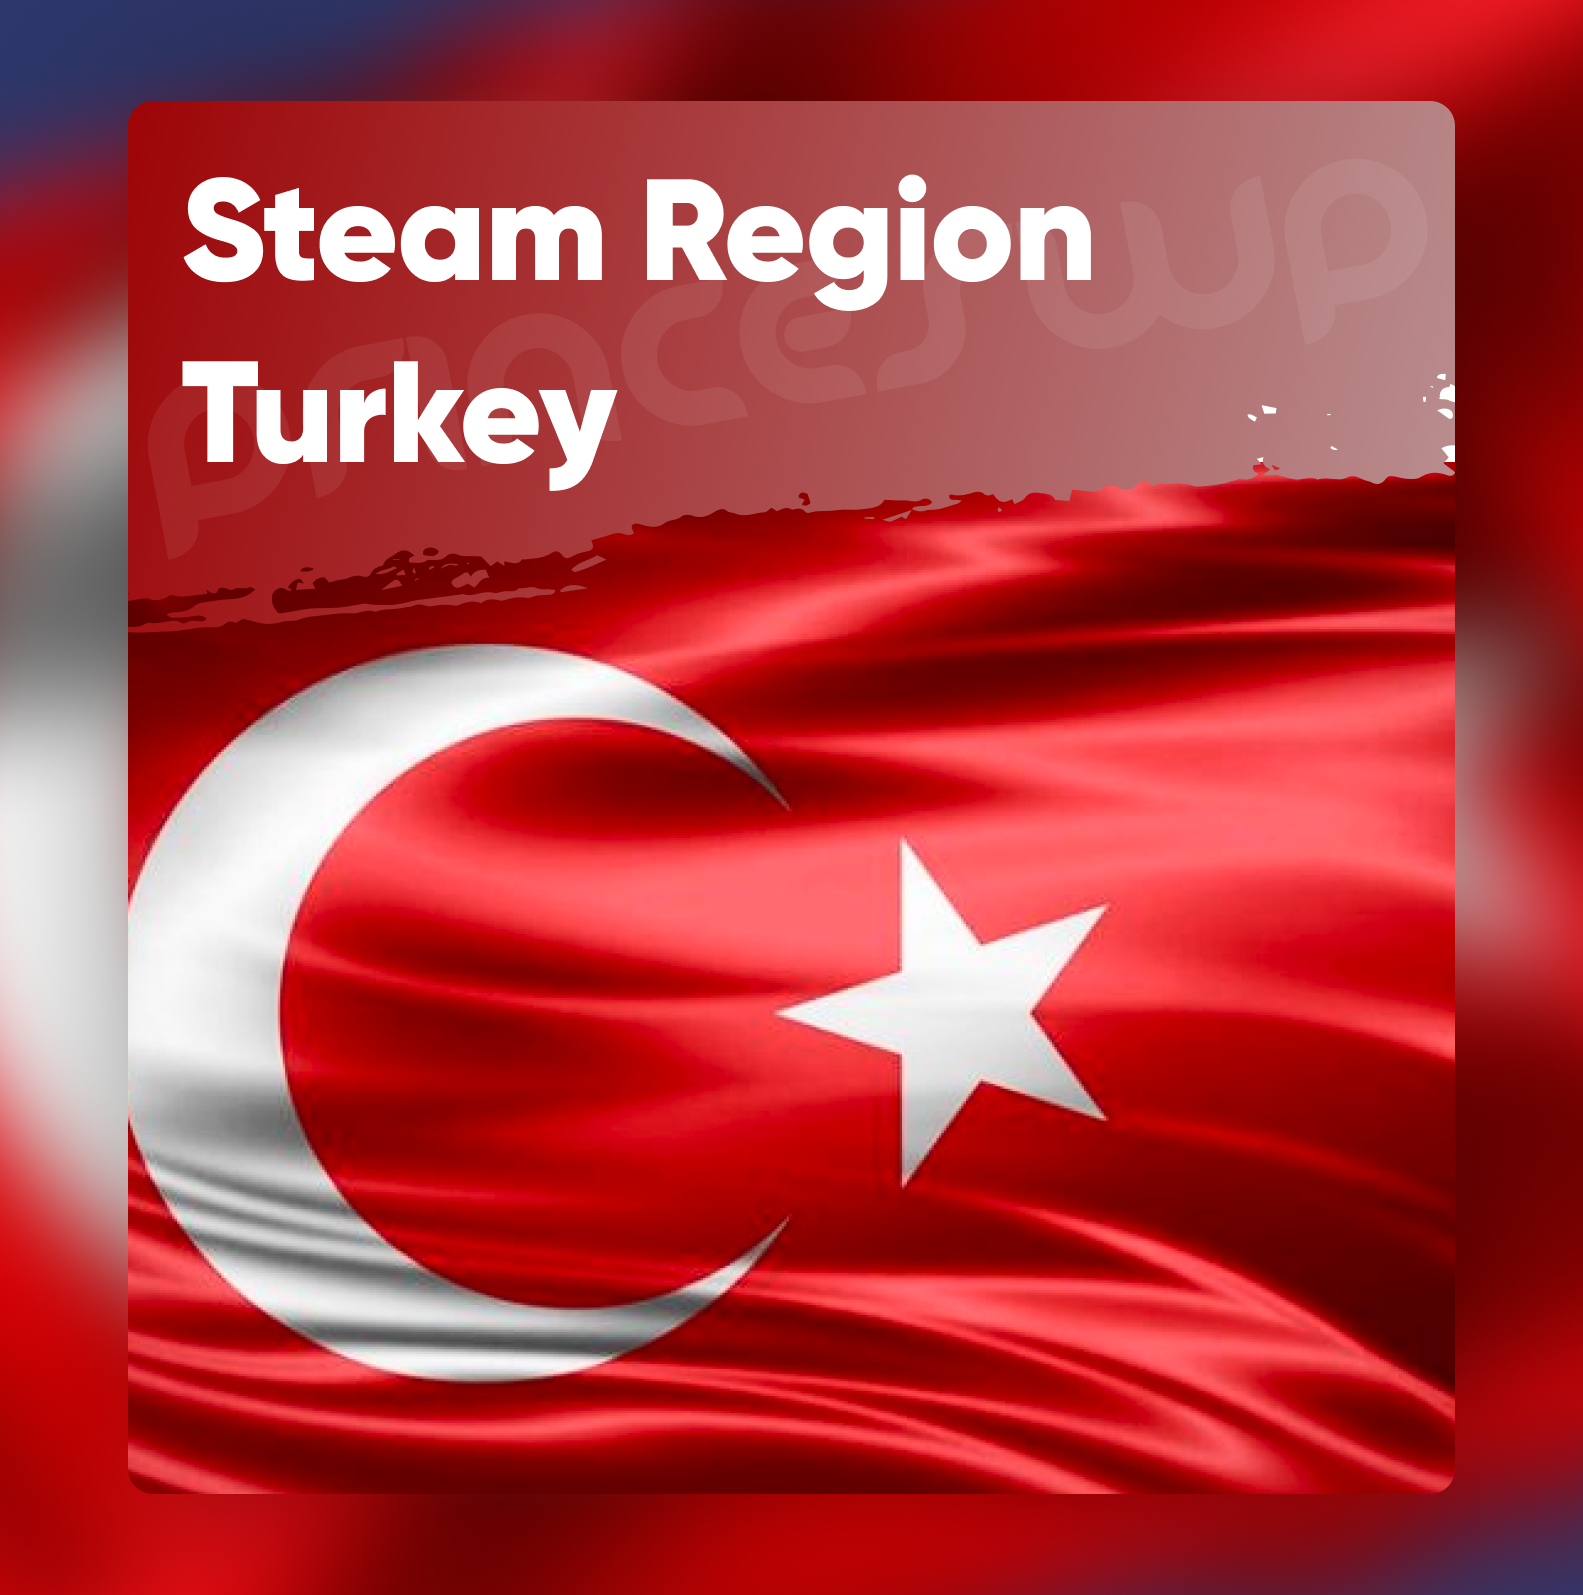 смена steam на турецкий регион фото 40